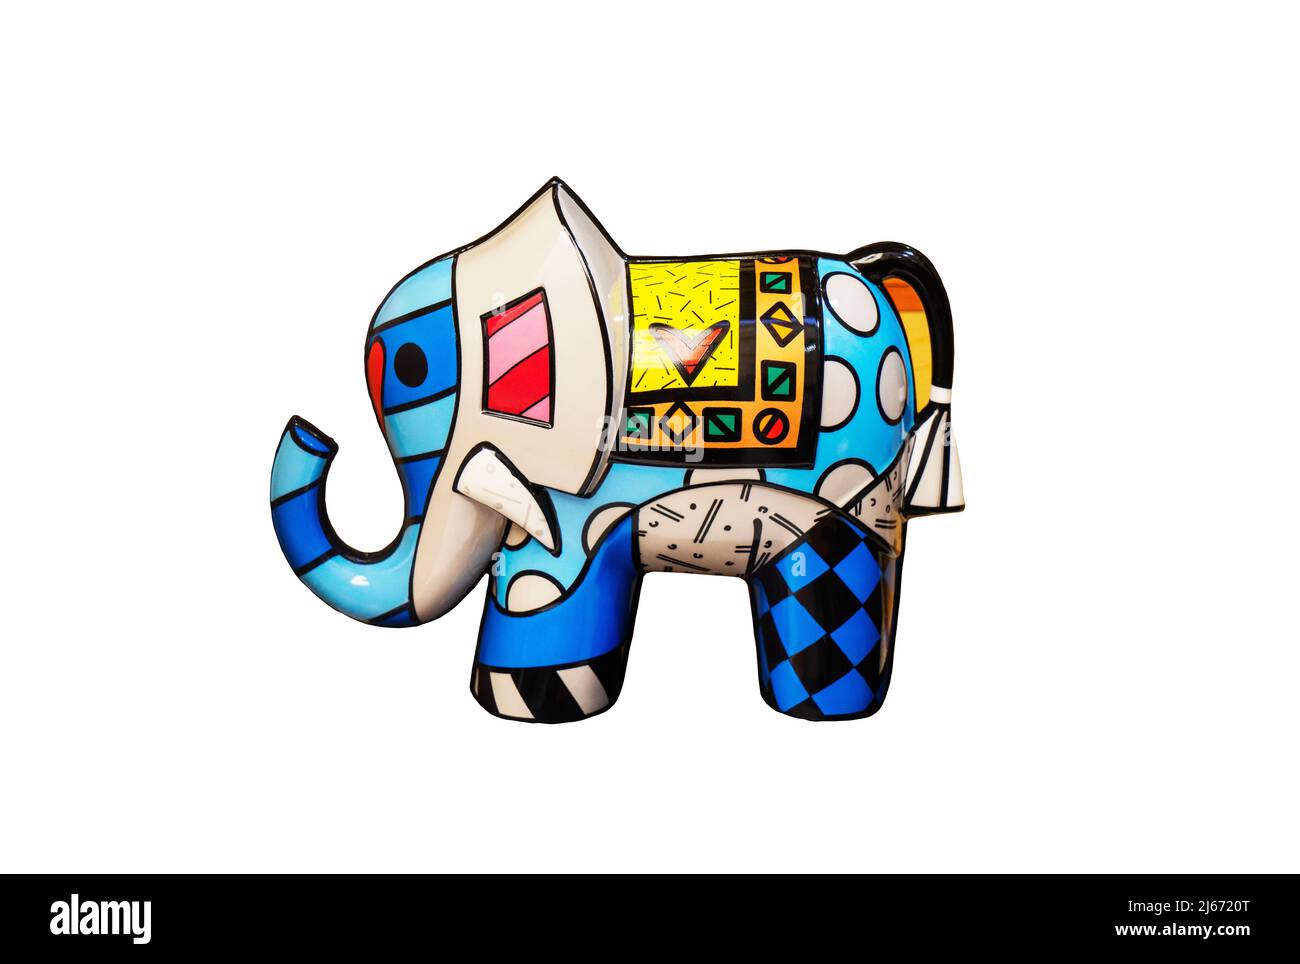 Figurina colorata, giocattolo di un elefante africano su sfondo bianco. Foto Stock